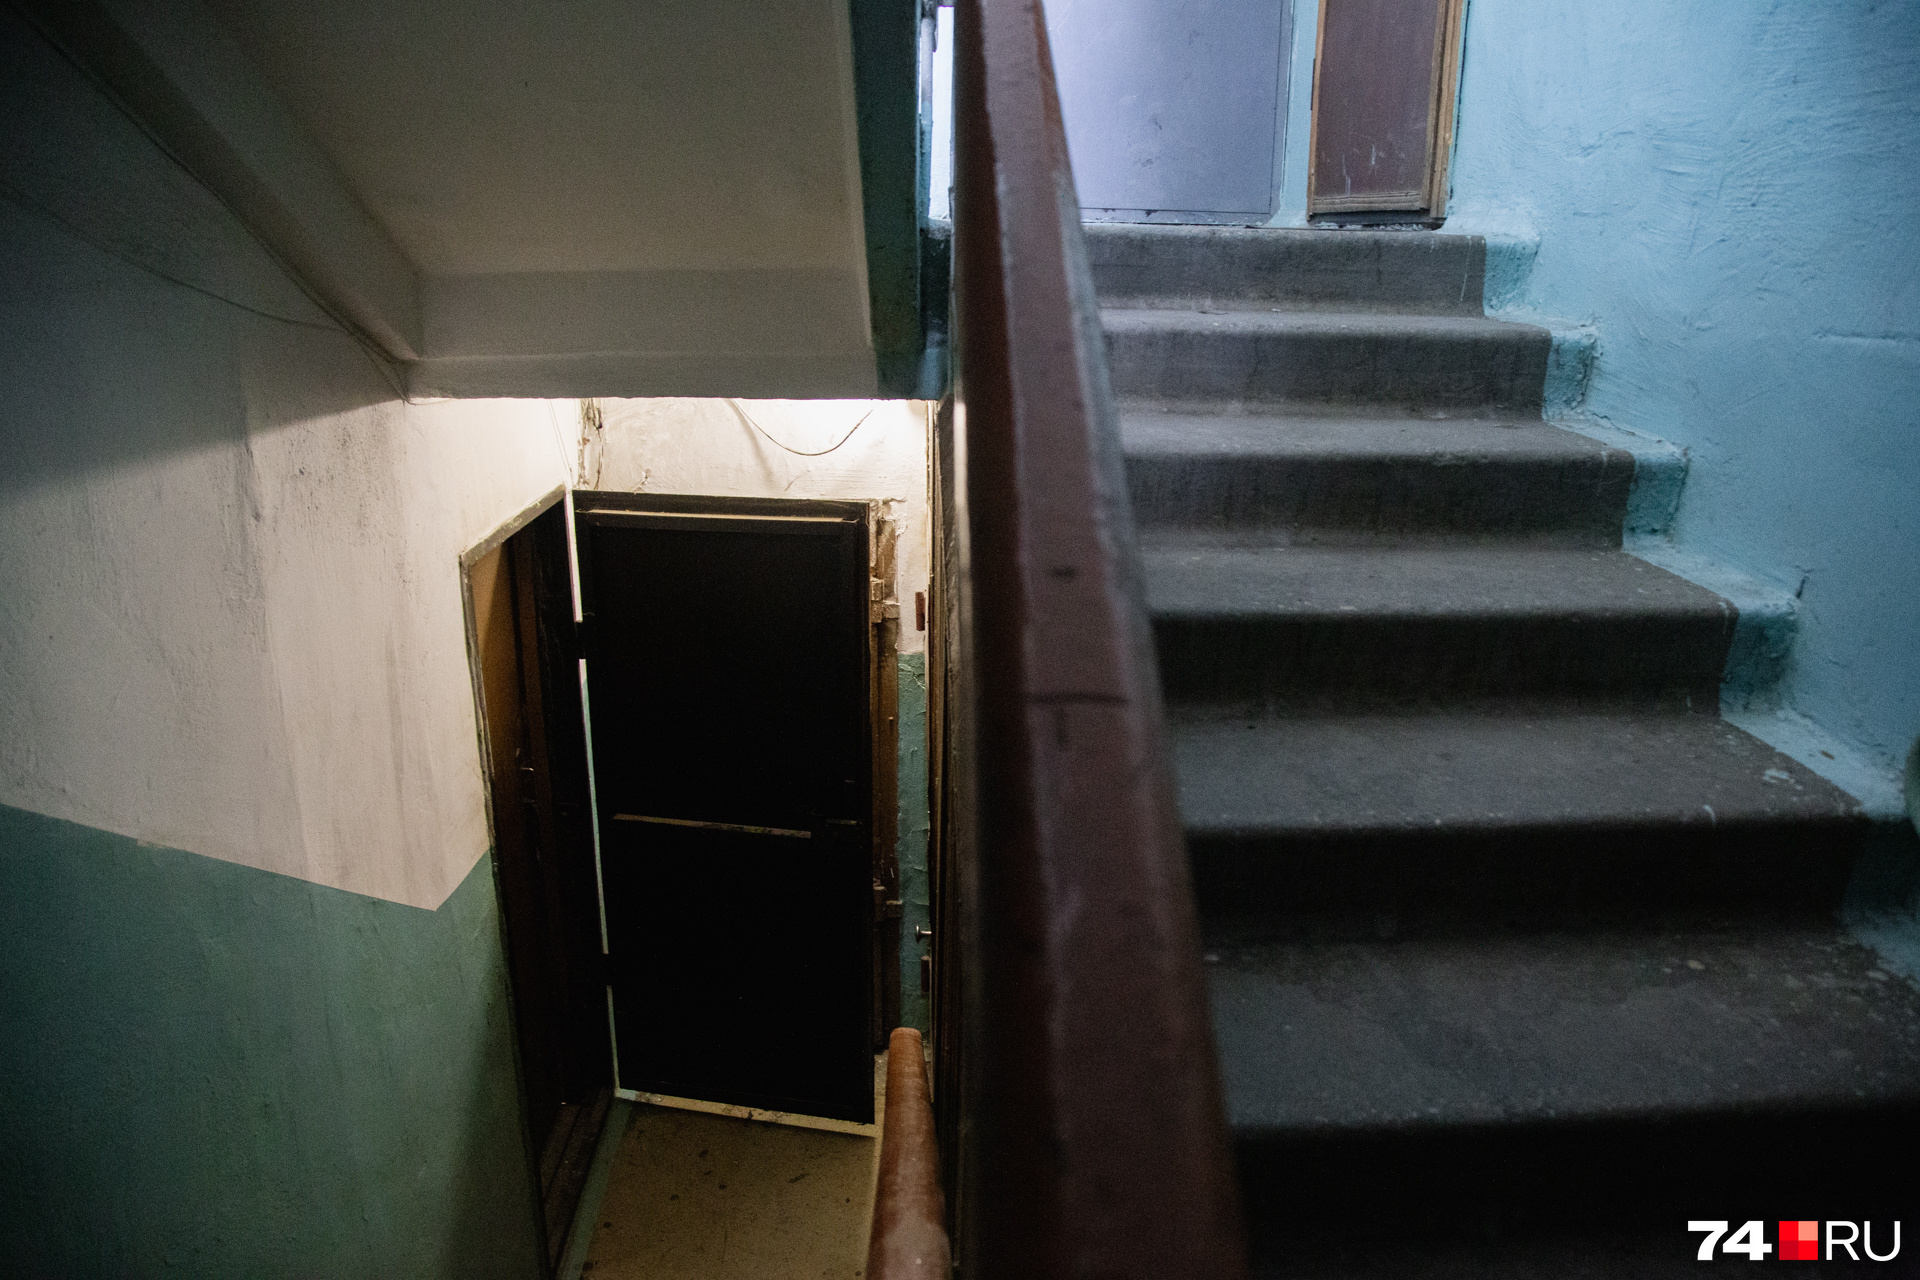 Вход в квартиру Олега — вниз по лестнице, там, где обычно в подъездах расположена дверь в подвал